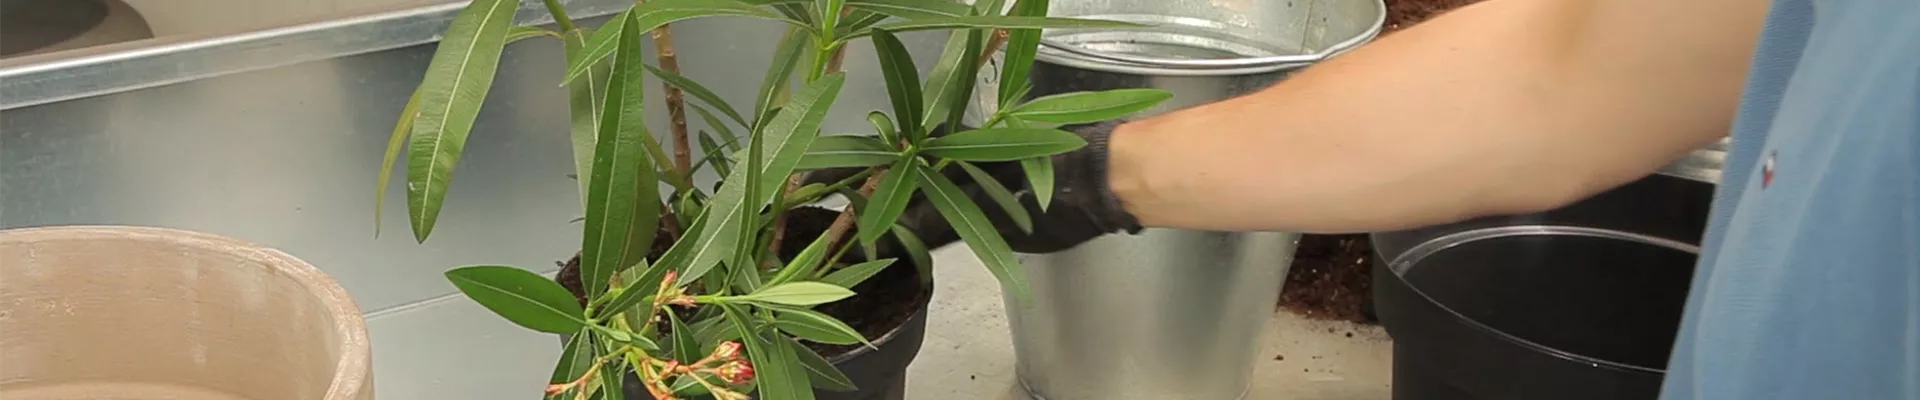 Oleander - Einpflanzen in ein Gefäß (thumbnail)